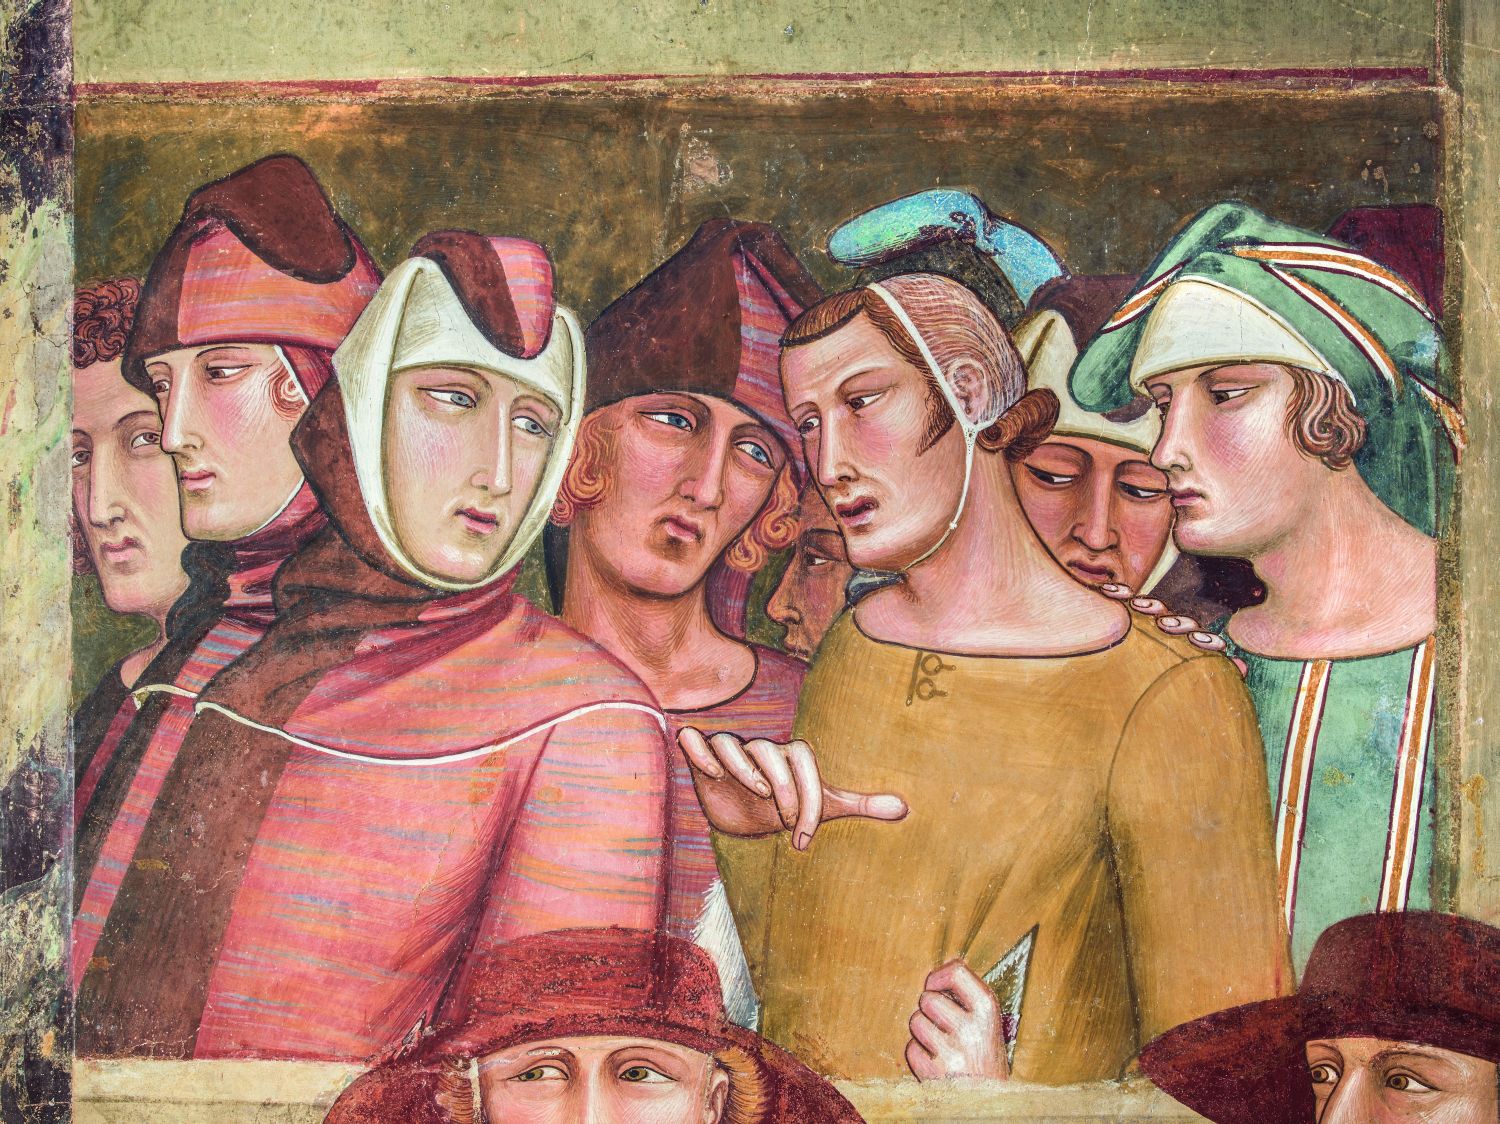 Ambrogio Lorenzetti nel Mondo delle Figurine, Illustrazioni di Elena P., Testi di Raffaele Moretti, Siena, nuova immagine 2018